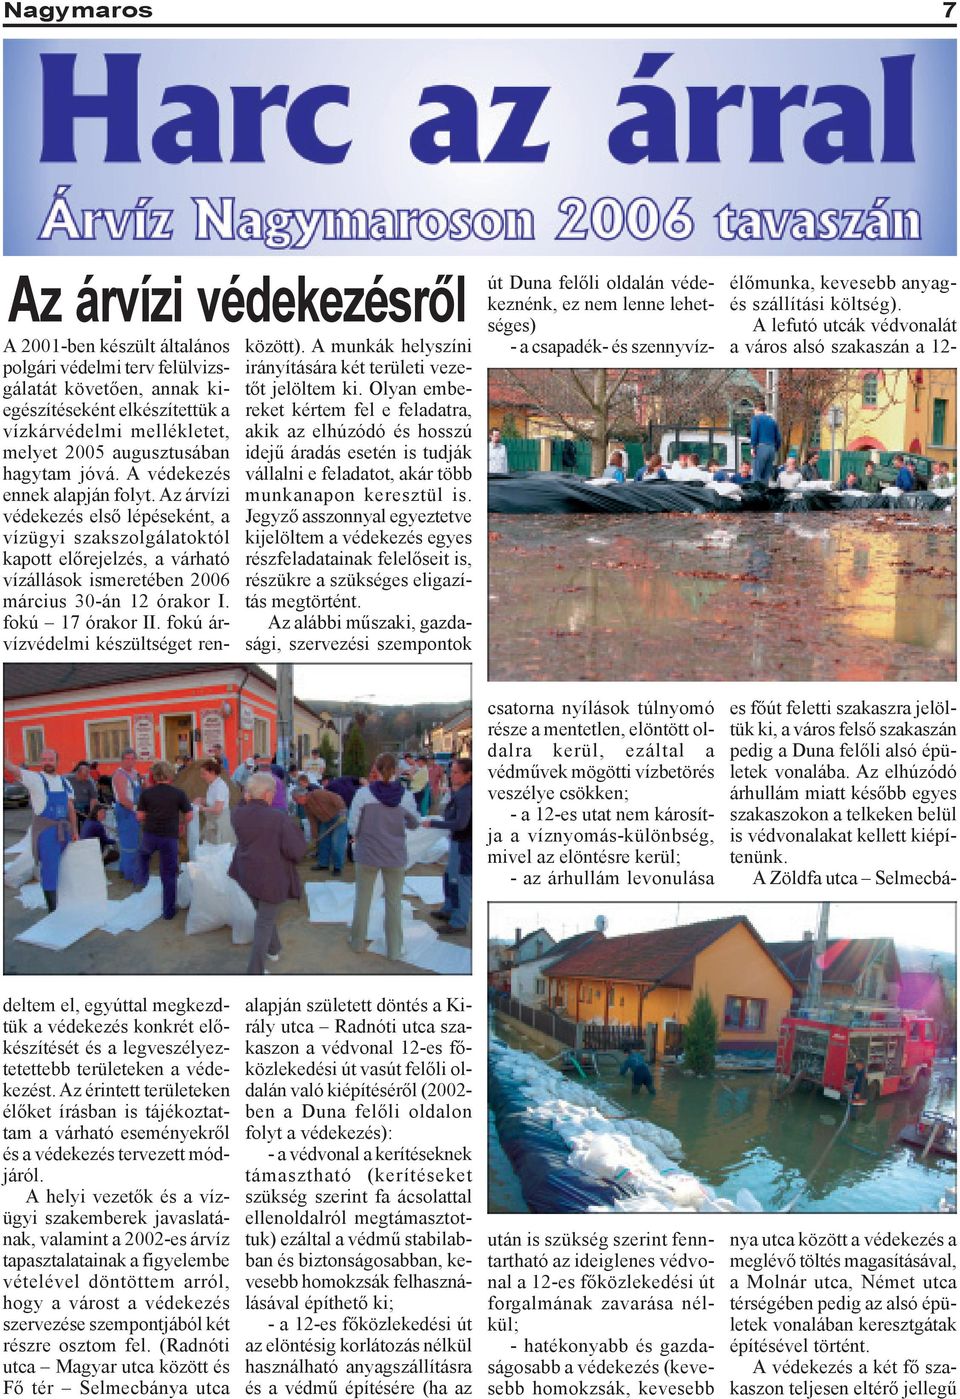 Az árvízi védekezés elsõ lépéseként, a vízügyi szakszolgálatoktól kapott elõrejelzés, a várható vízállások ismeretében 2006 március 30-án 12 órakor I. fokú 17 órakor II.